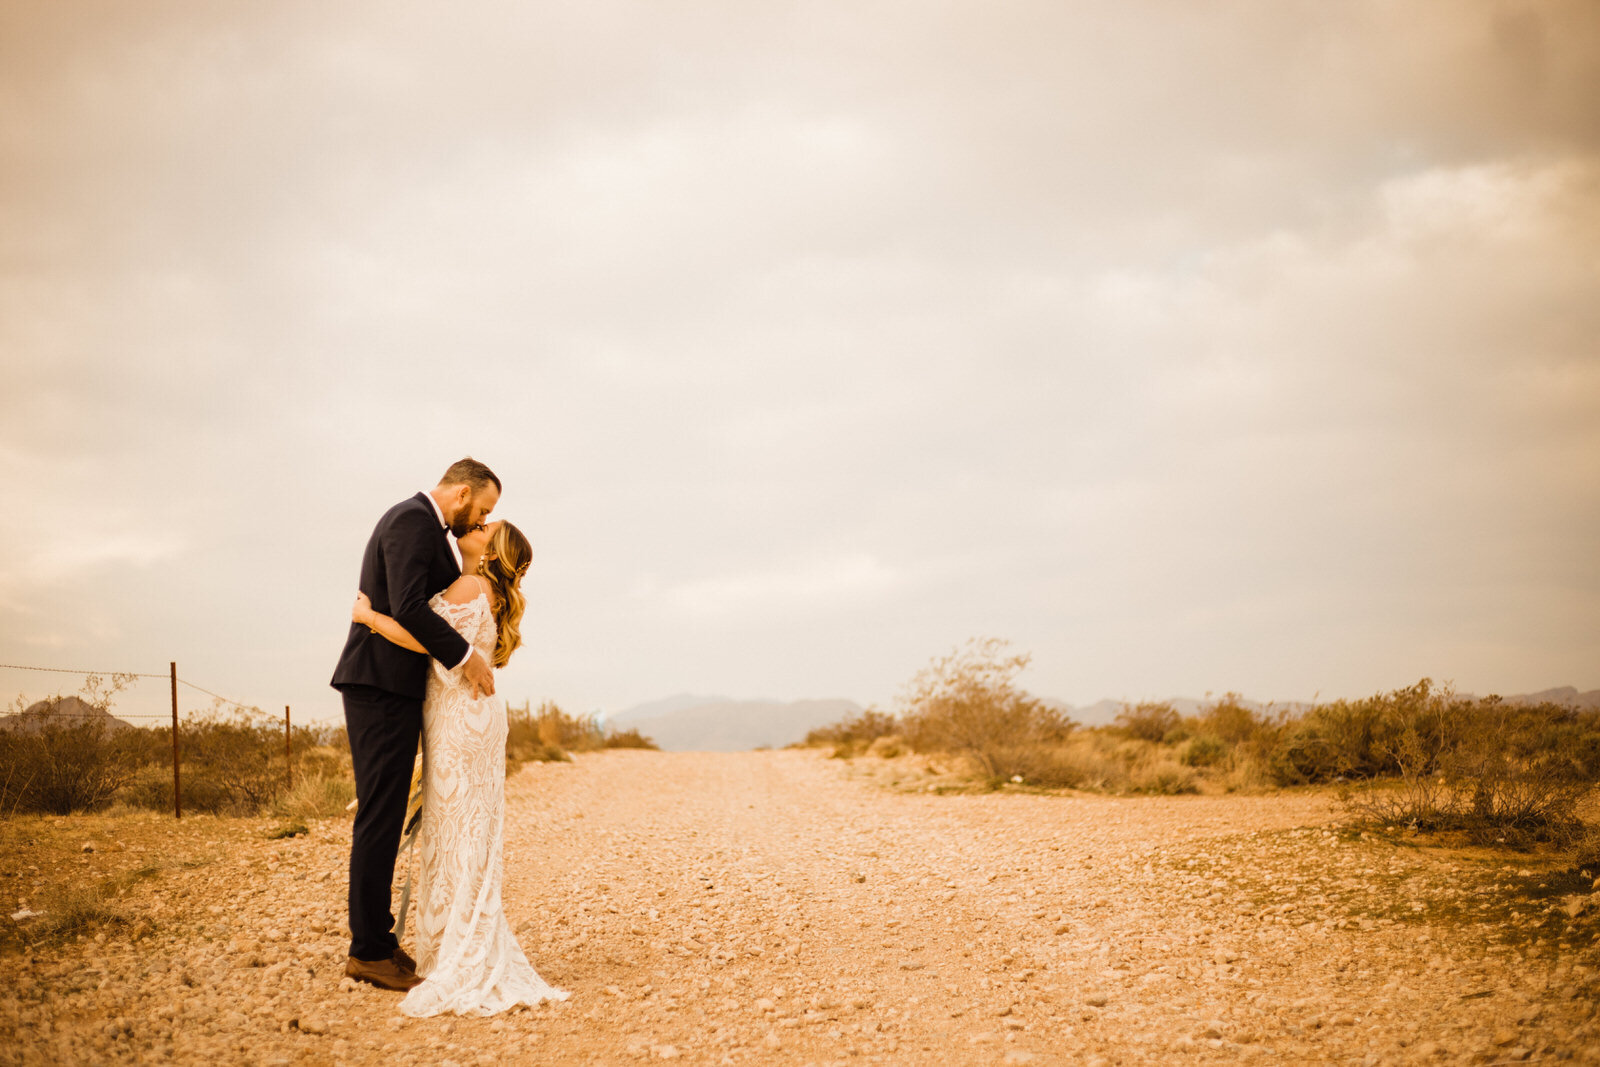 Las-Vegas-Wedding-Bride-And-Groom-Kiss-On-Dirt-Road-in-Nevada-Desert.JPG